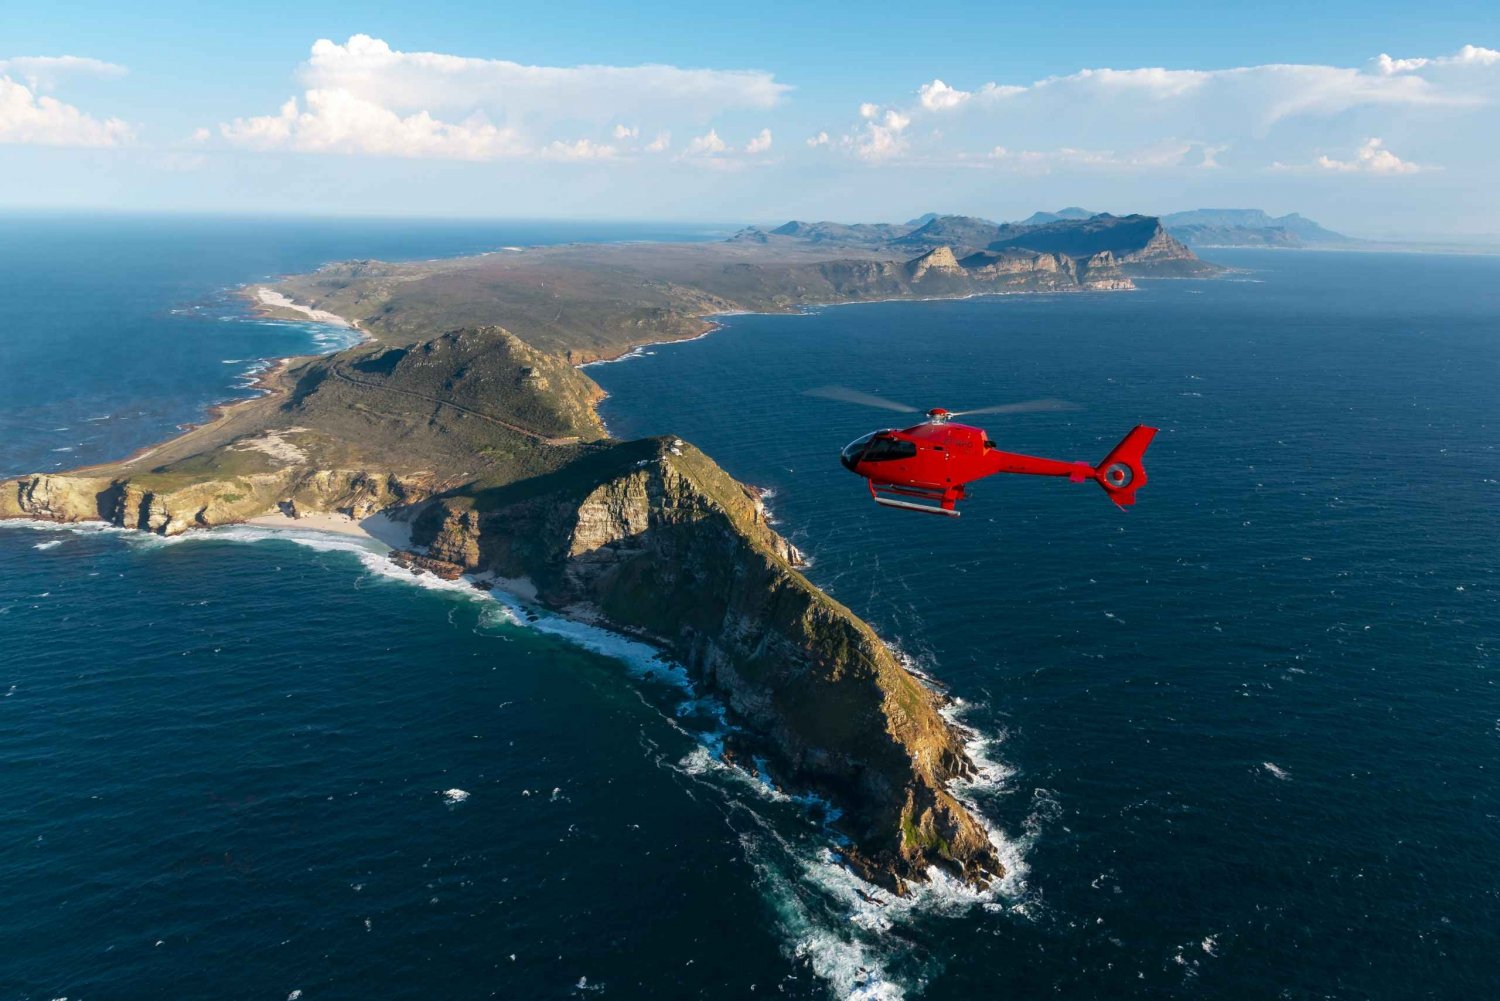 Le Cap : Excursion en hélicoptère à la pointe du Cap